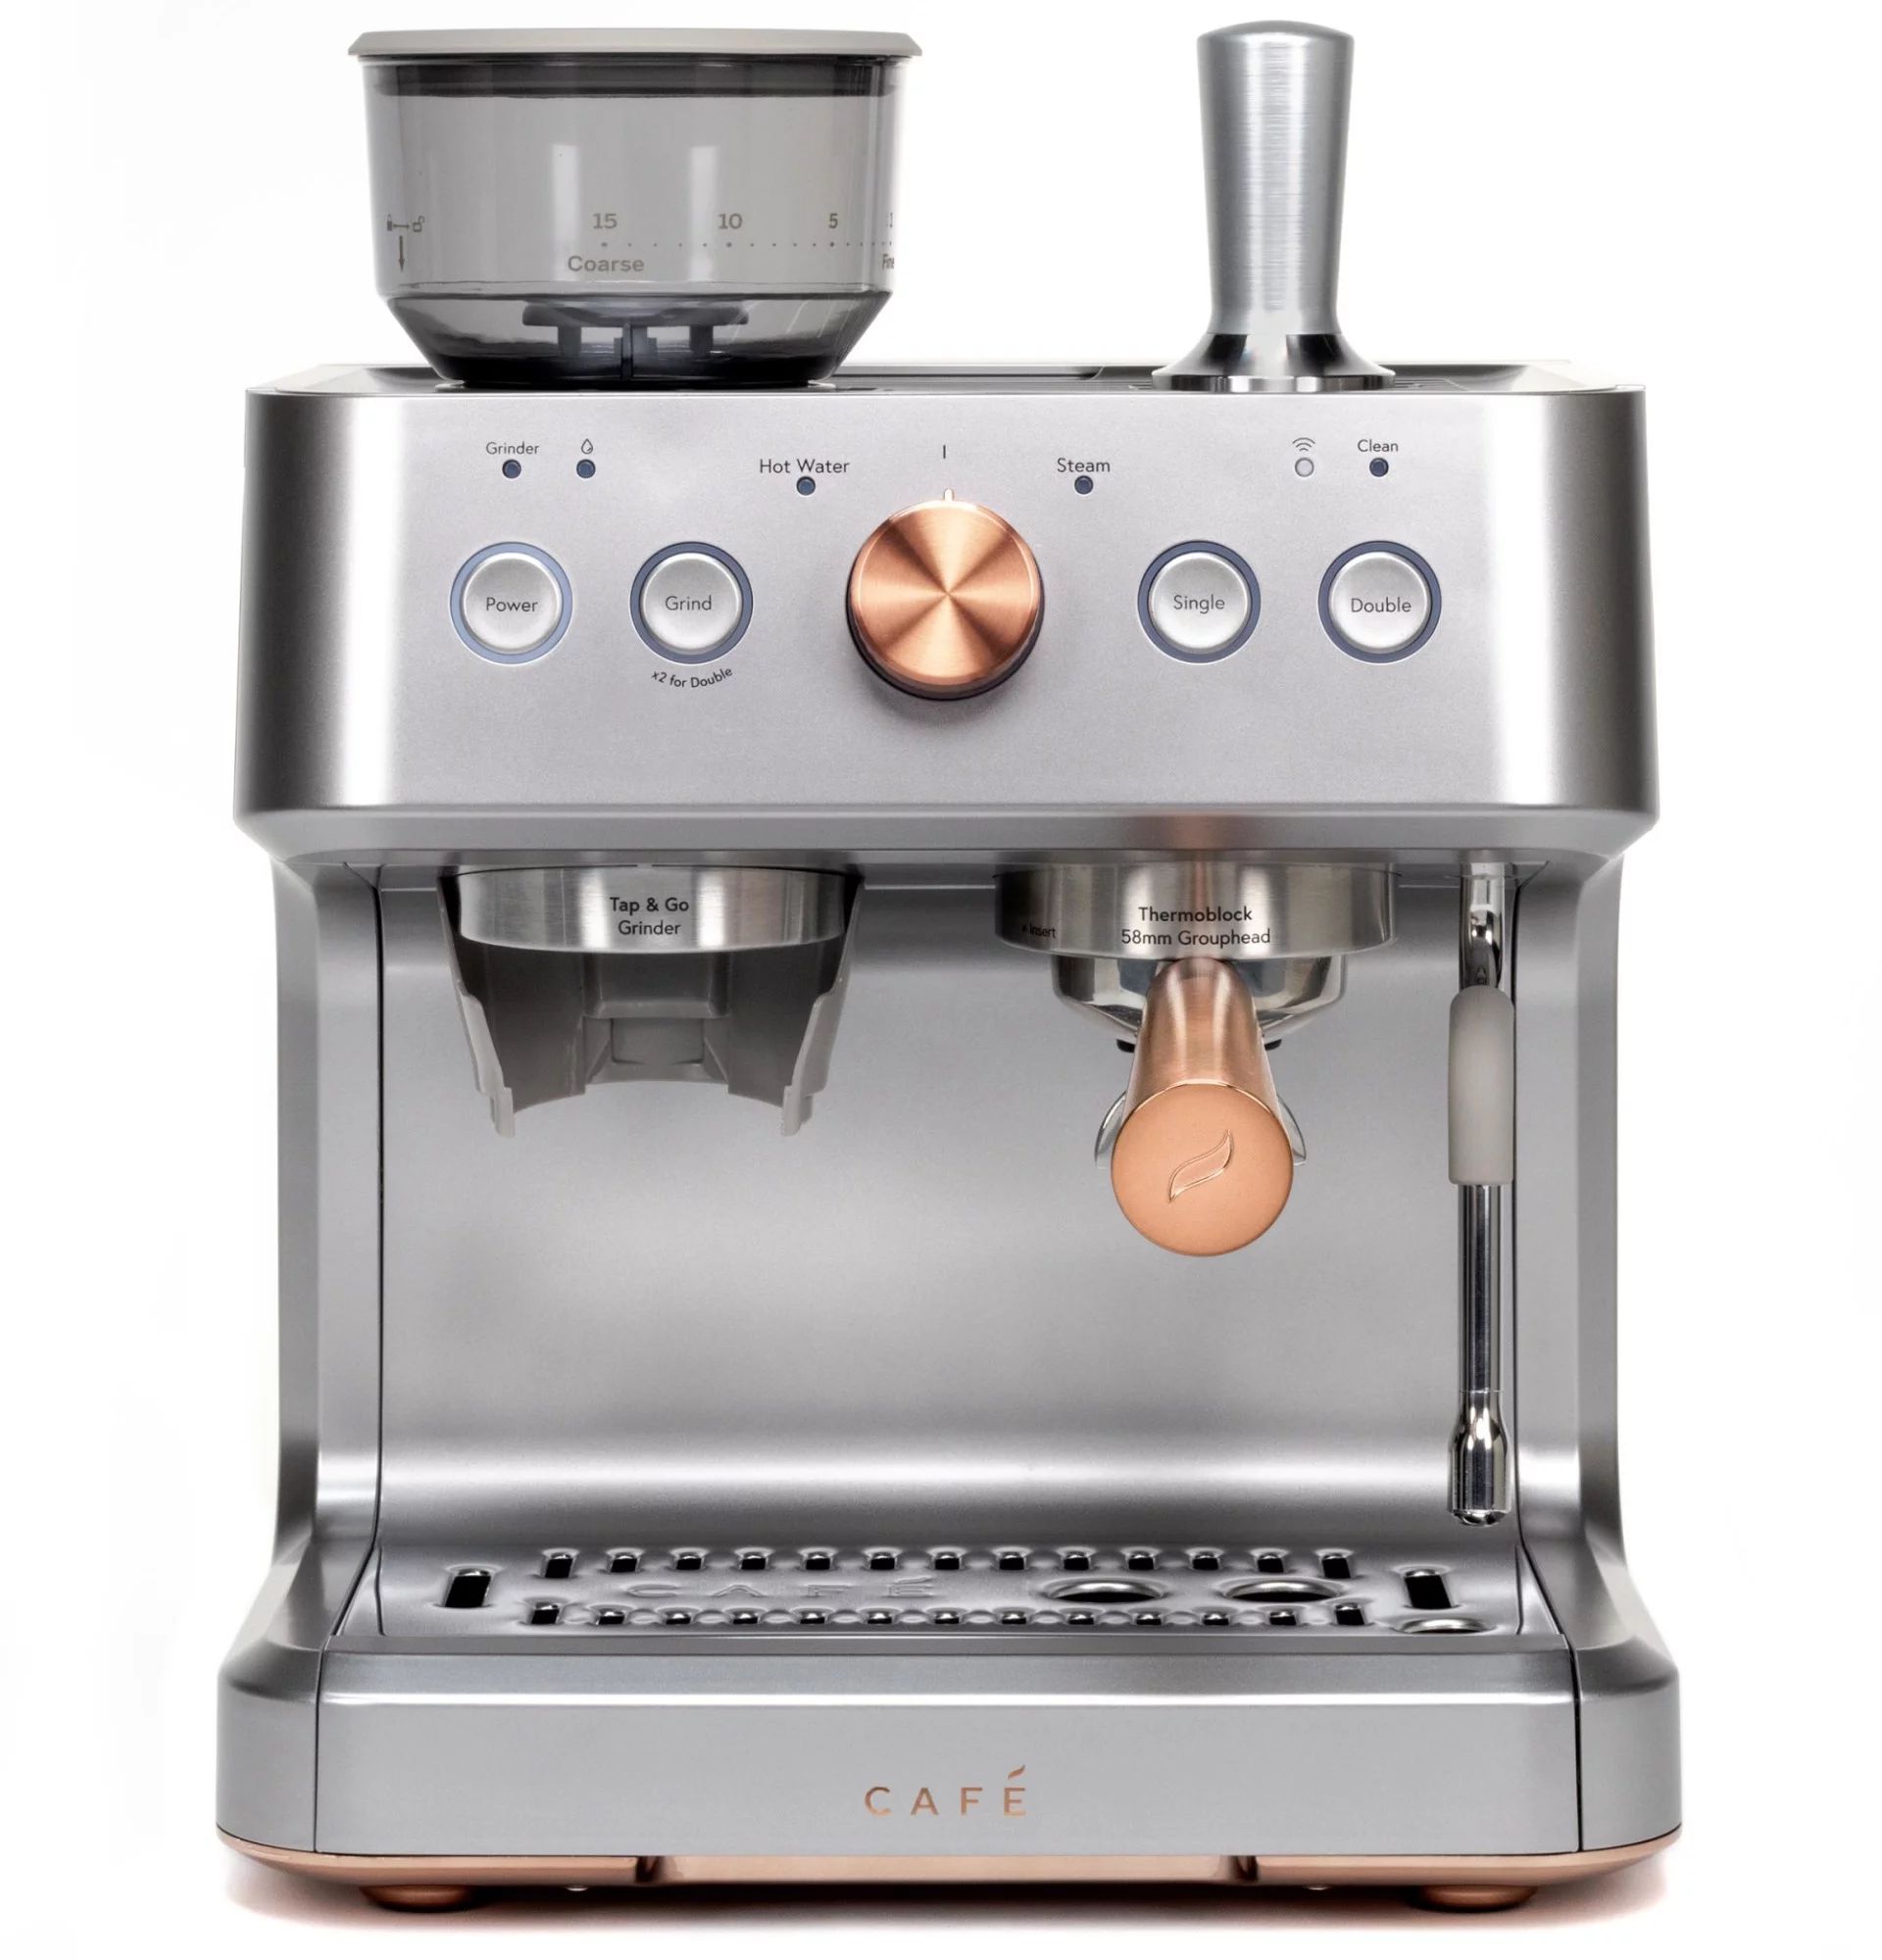 Café Bellissimo Semi Automatic Espresso Machine + Milk Frother | WiFi Connected, Smart Kitchen E... | Walmart (US)